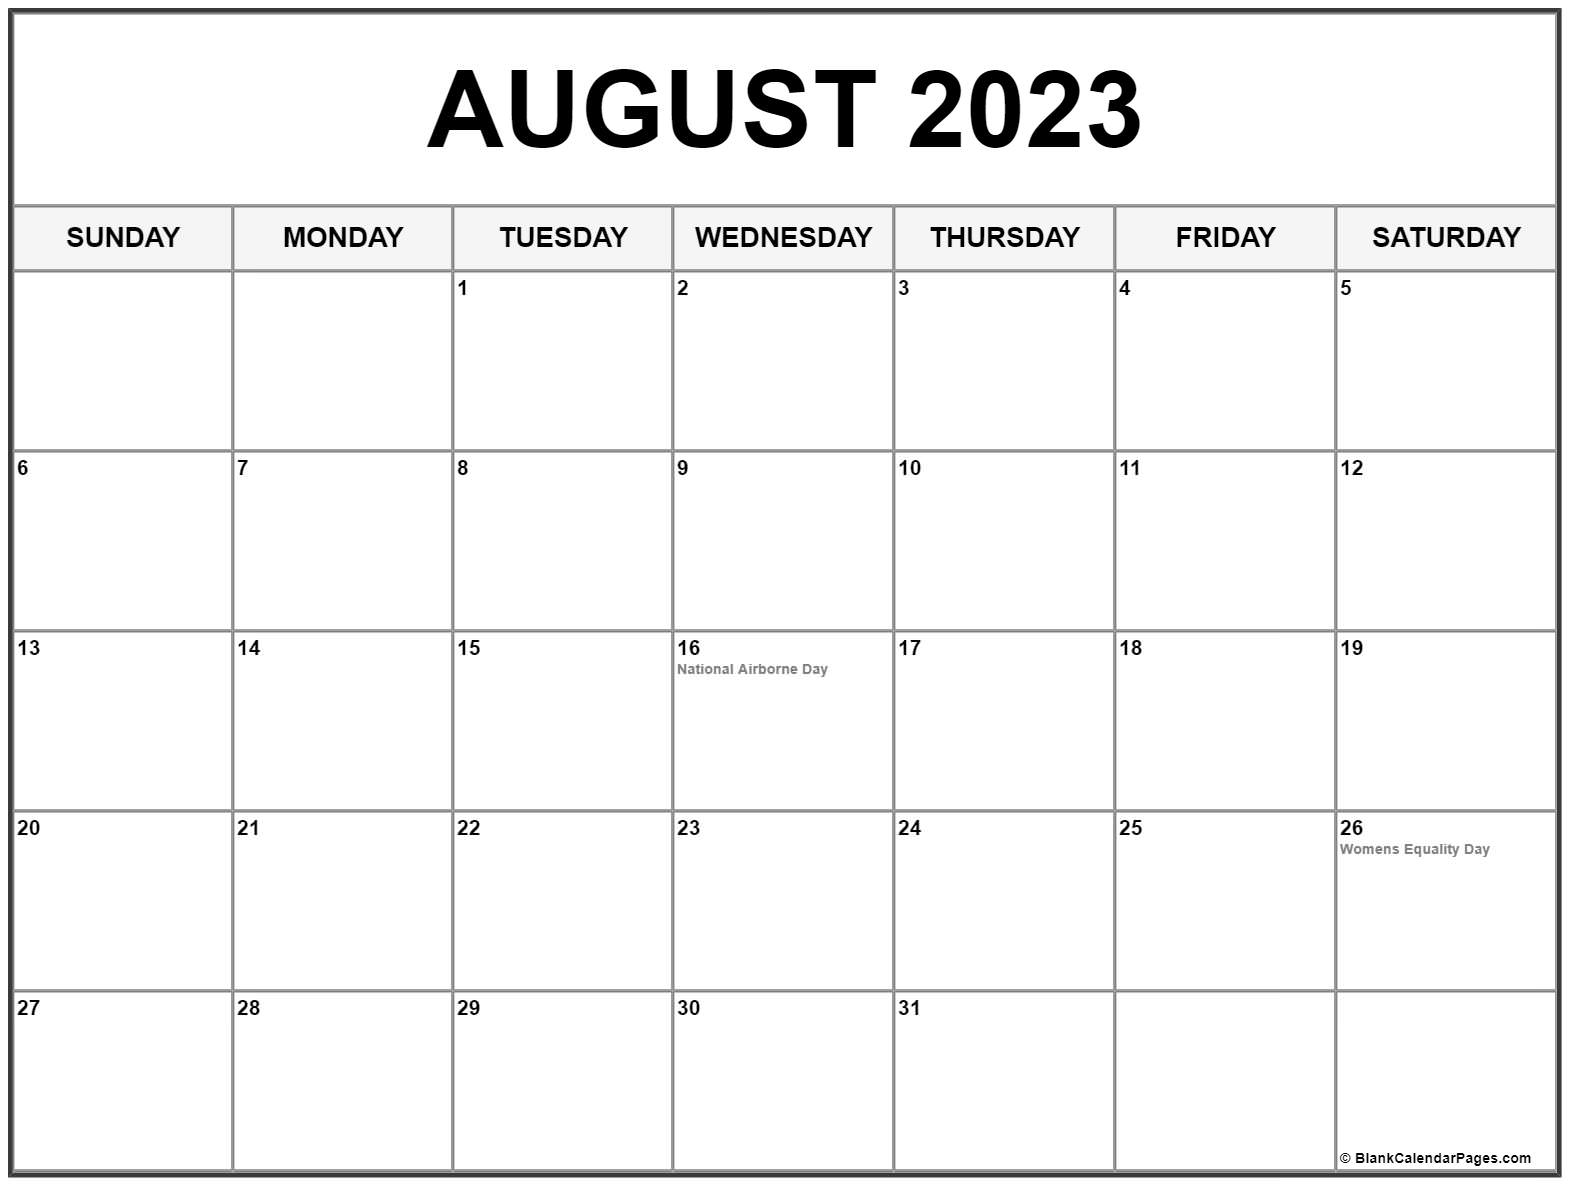 calendario-2023-espa-241-ol-calendario-aug-2021-imagesee